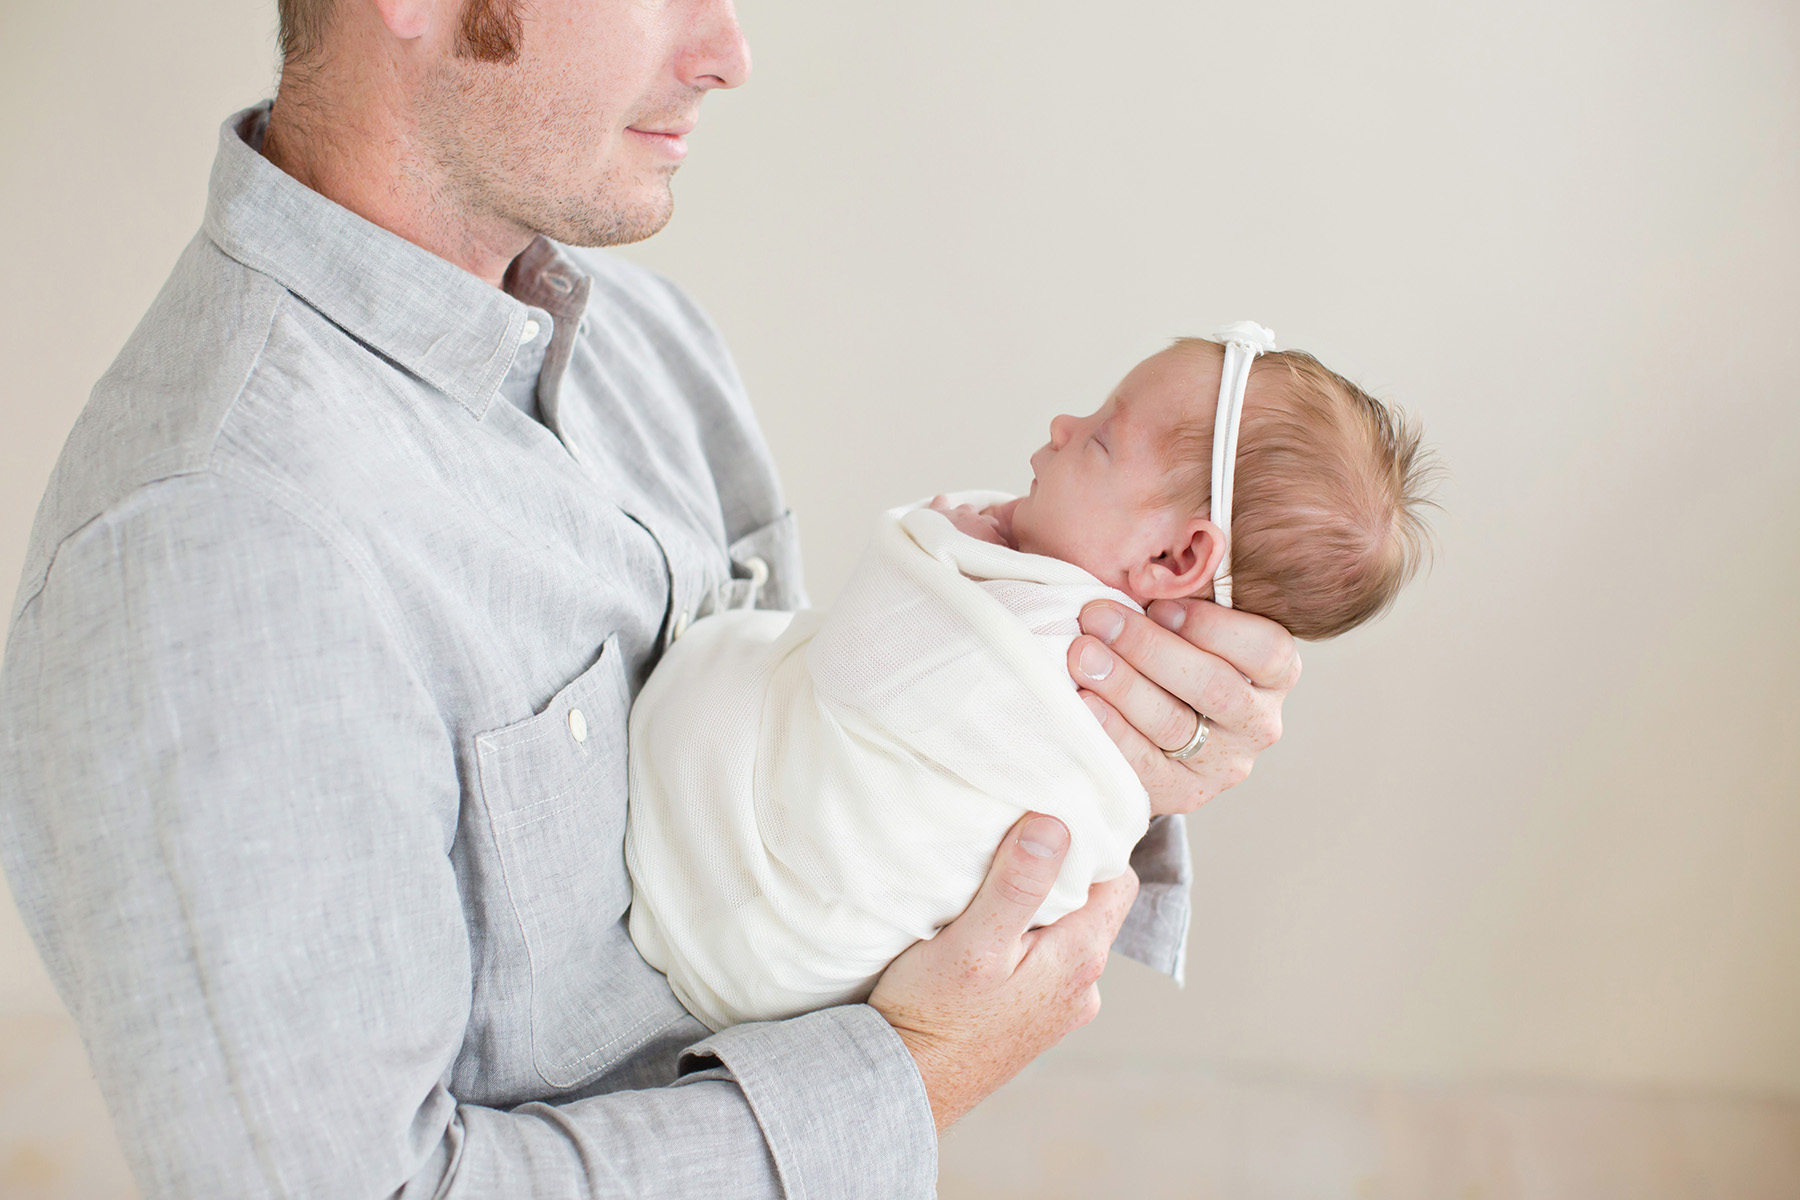 Louisville KY newborn photographer | Julie Brock Photography | maternity | family | louisville photography studio | newborn baby photography with dad